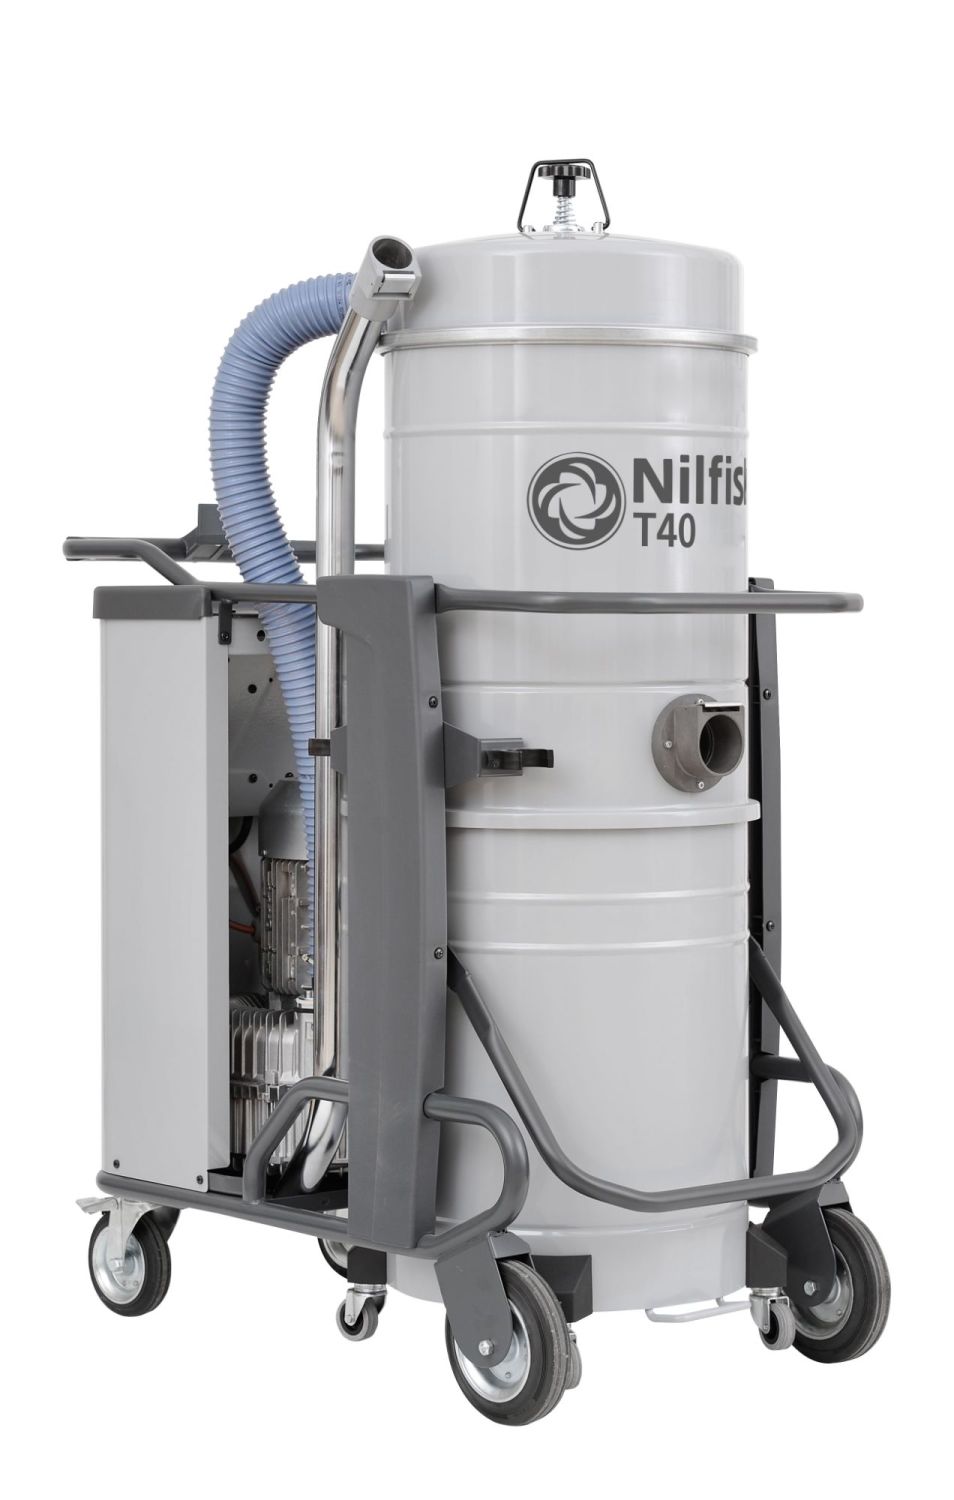 Nilfisk T40 Industrial Vacuum